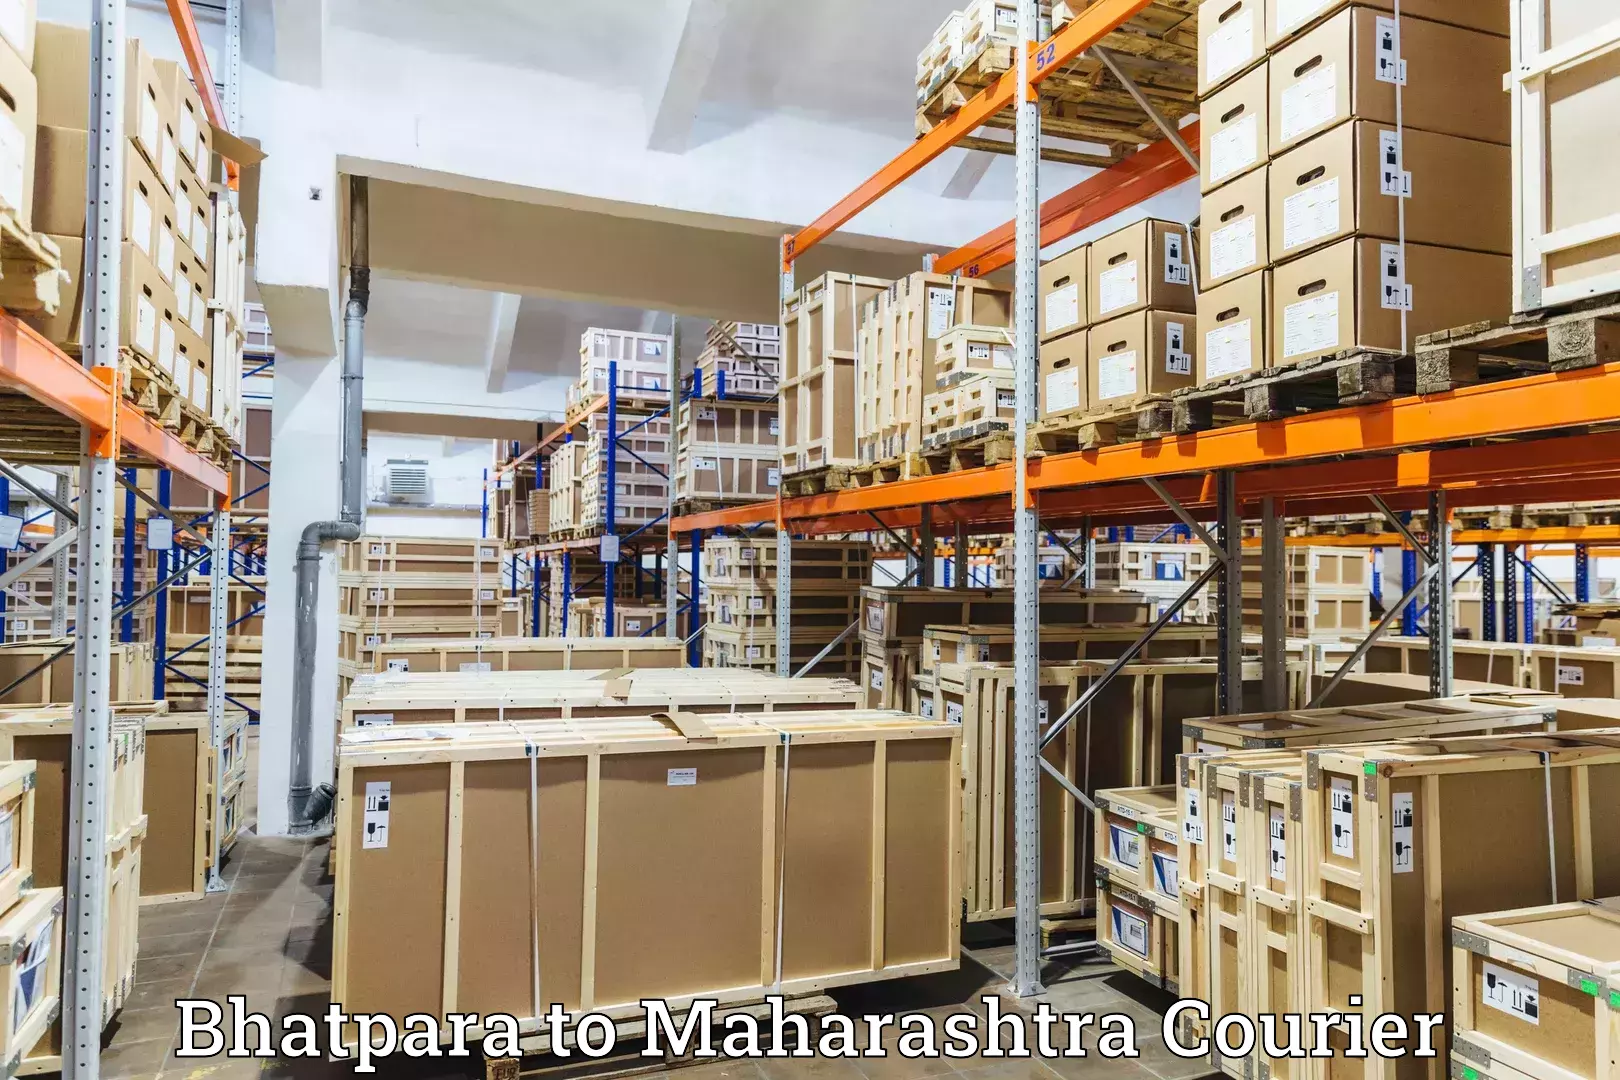 24/7 shipping services Bhatpara to Maharashtra